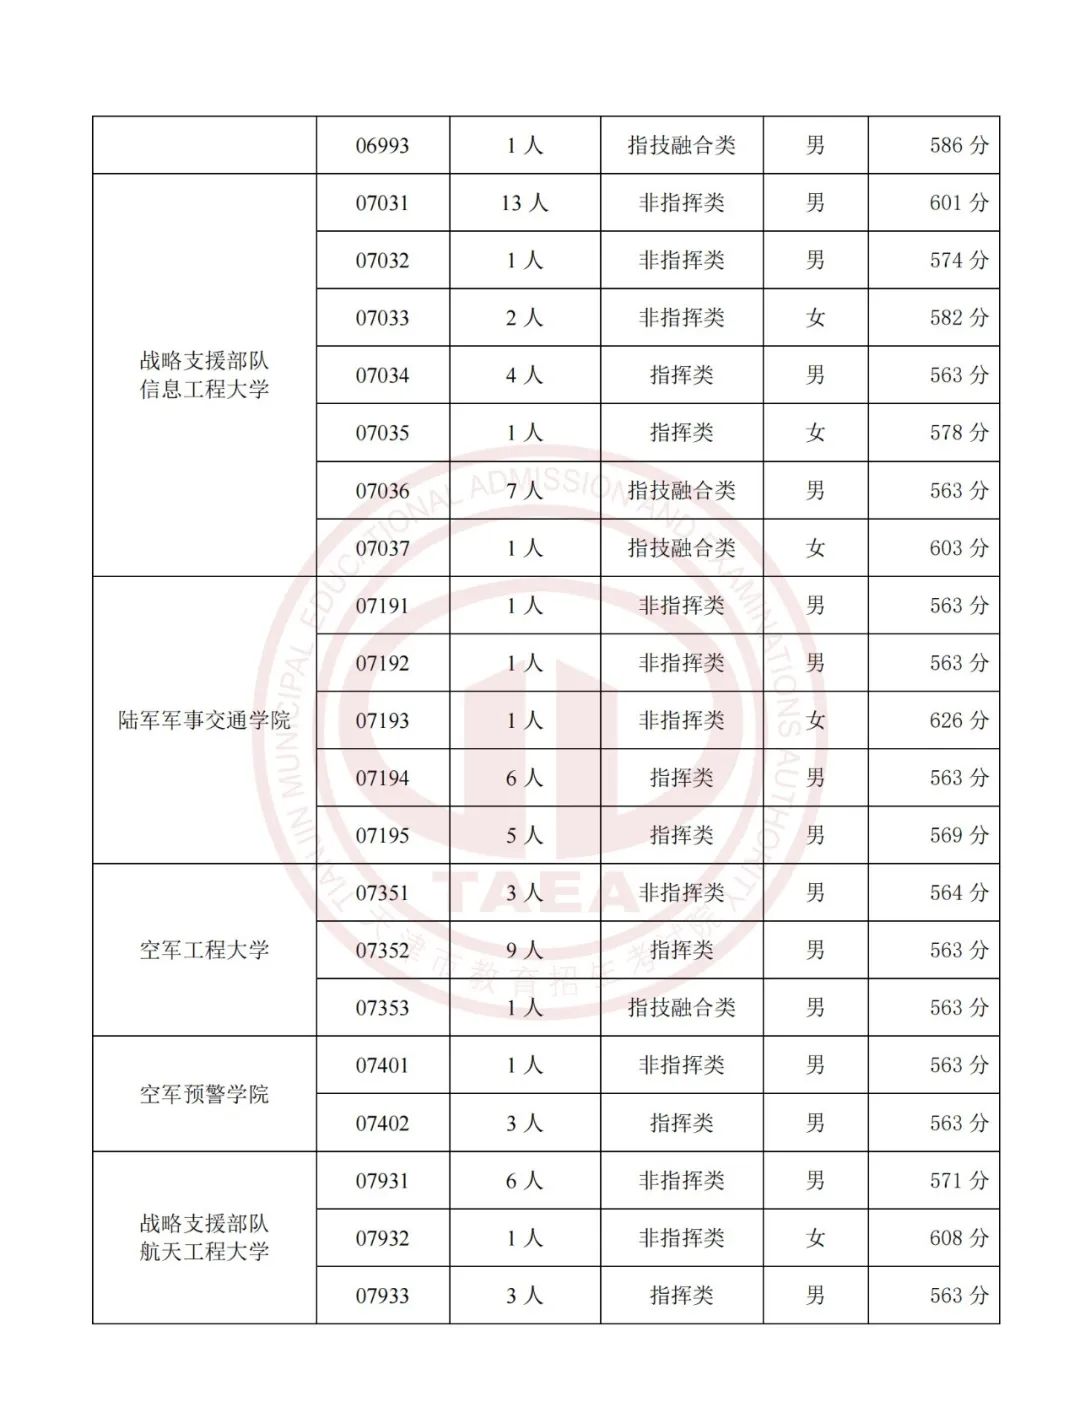 2023各军事公安院校在天津面试分数线公布